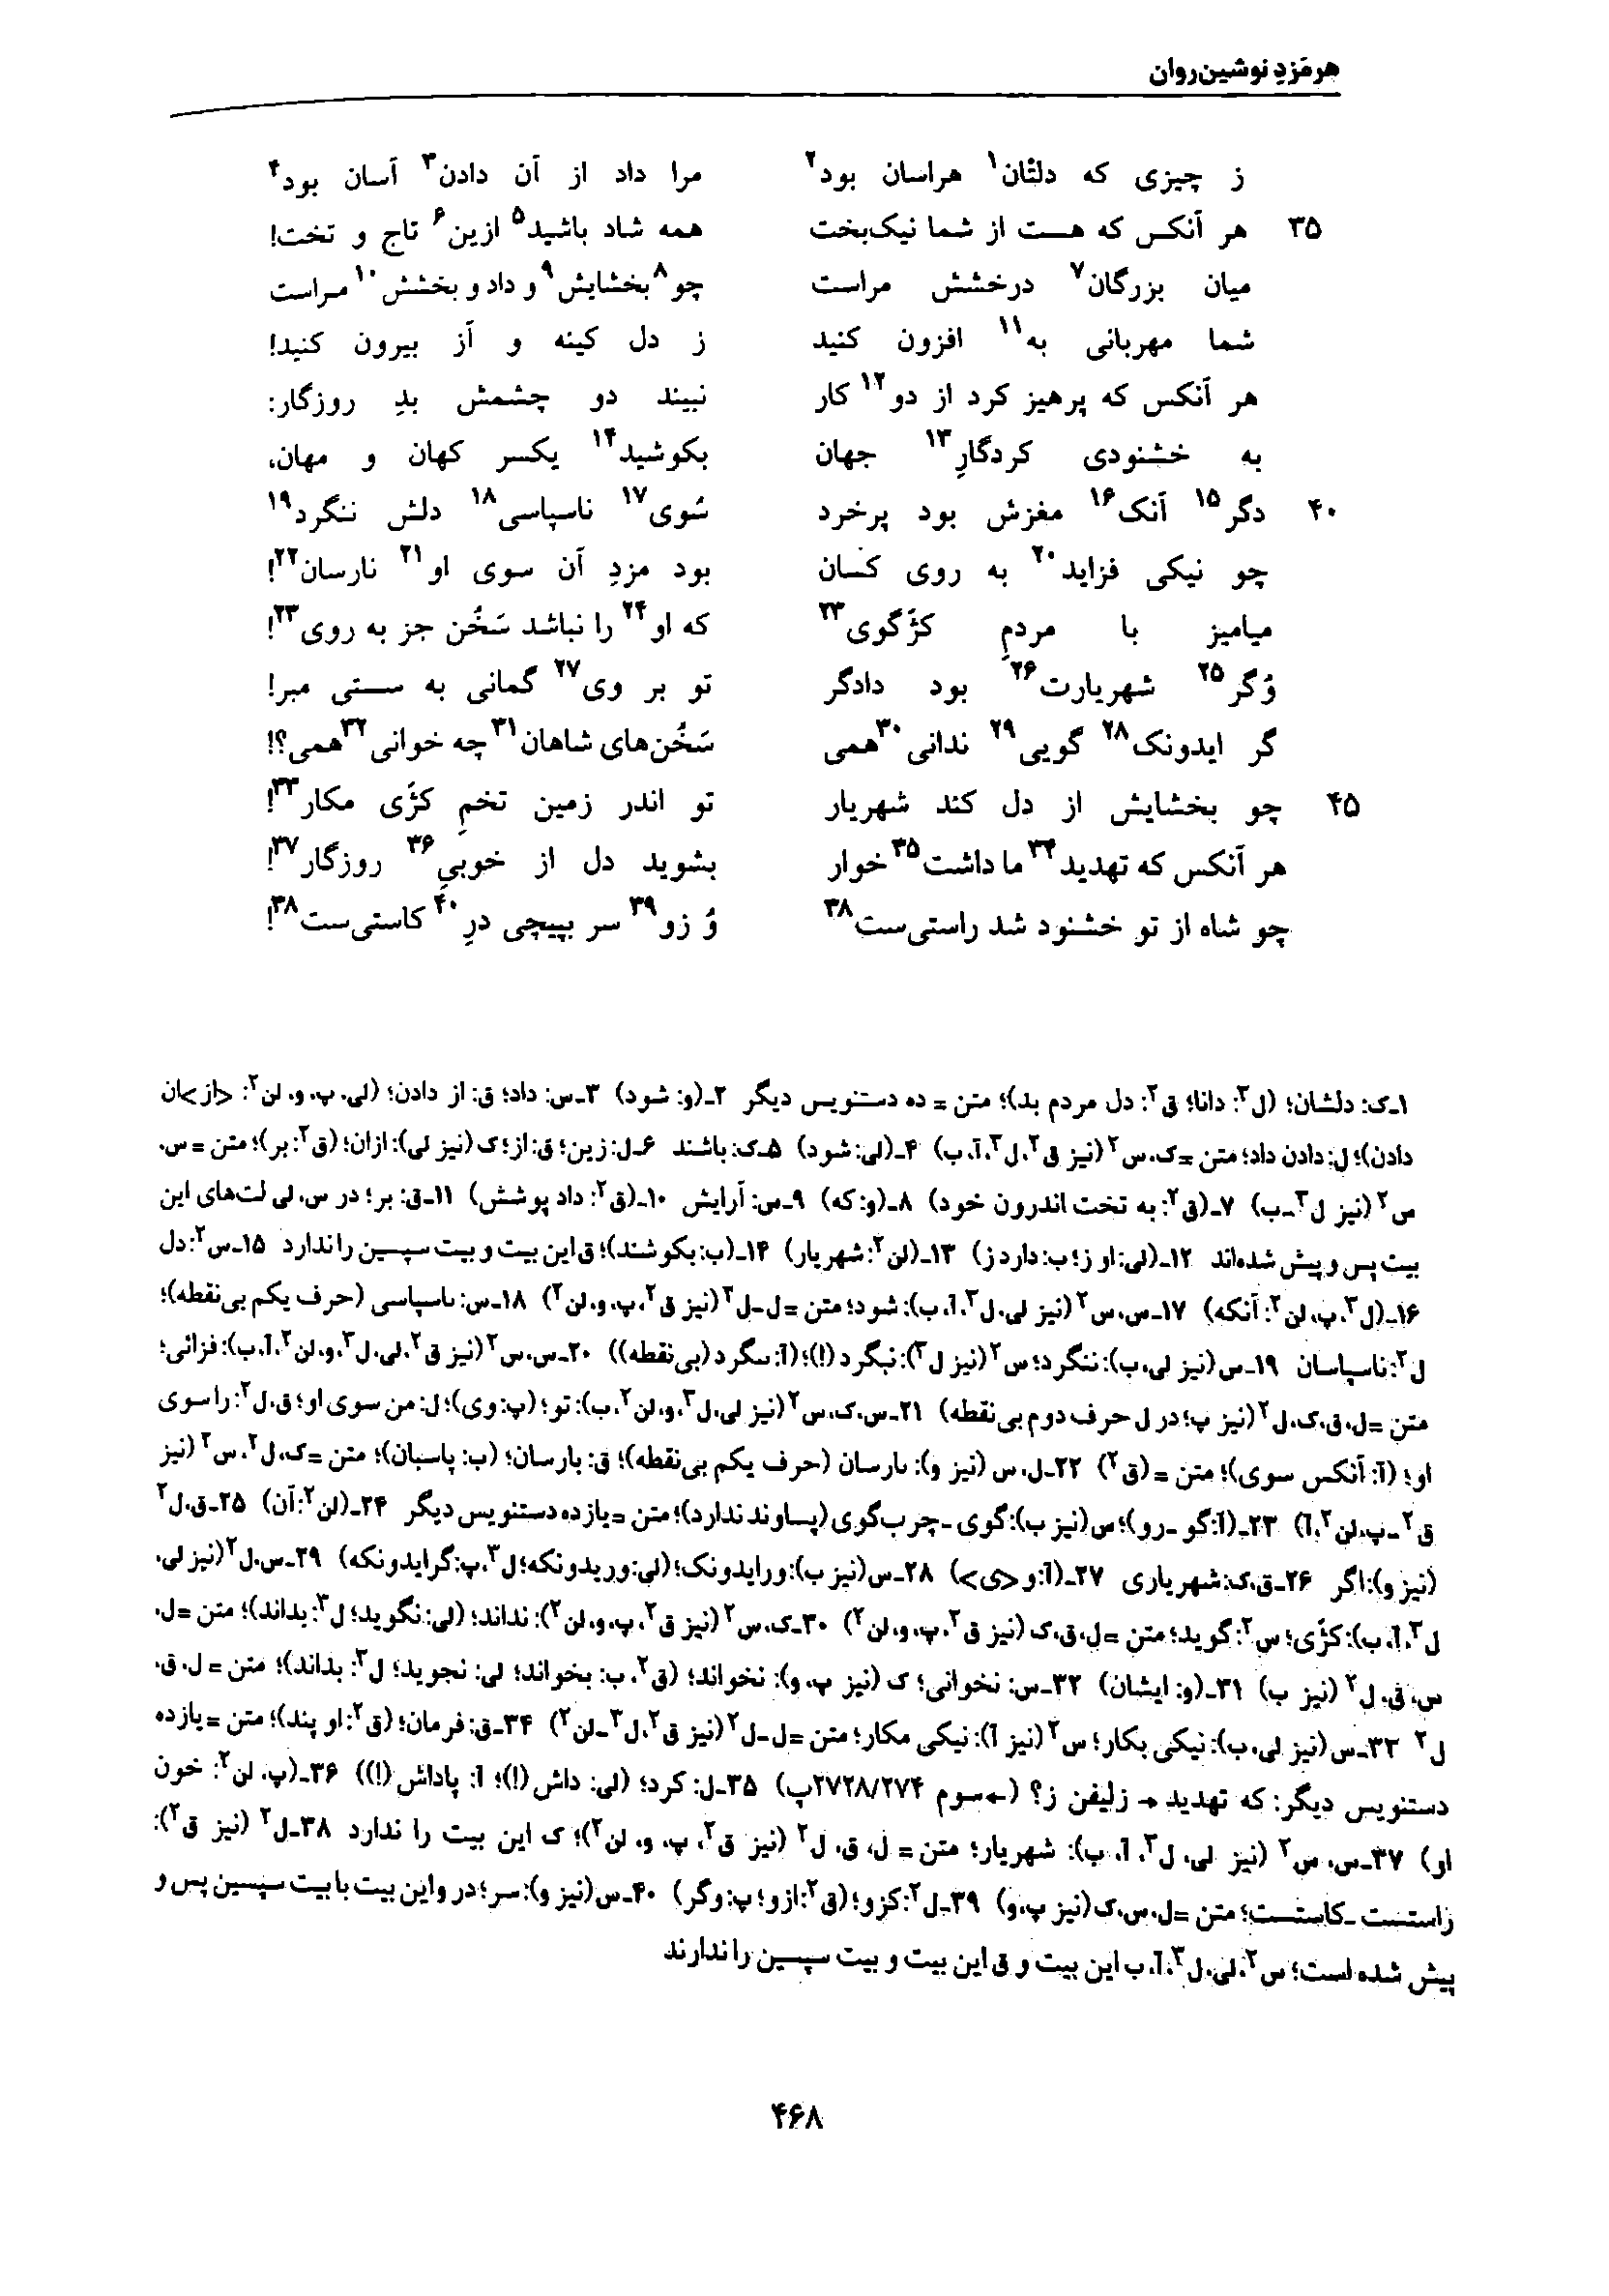 vol. 7, p. 468